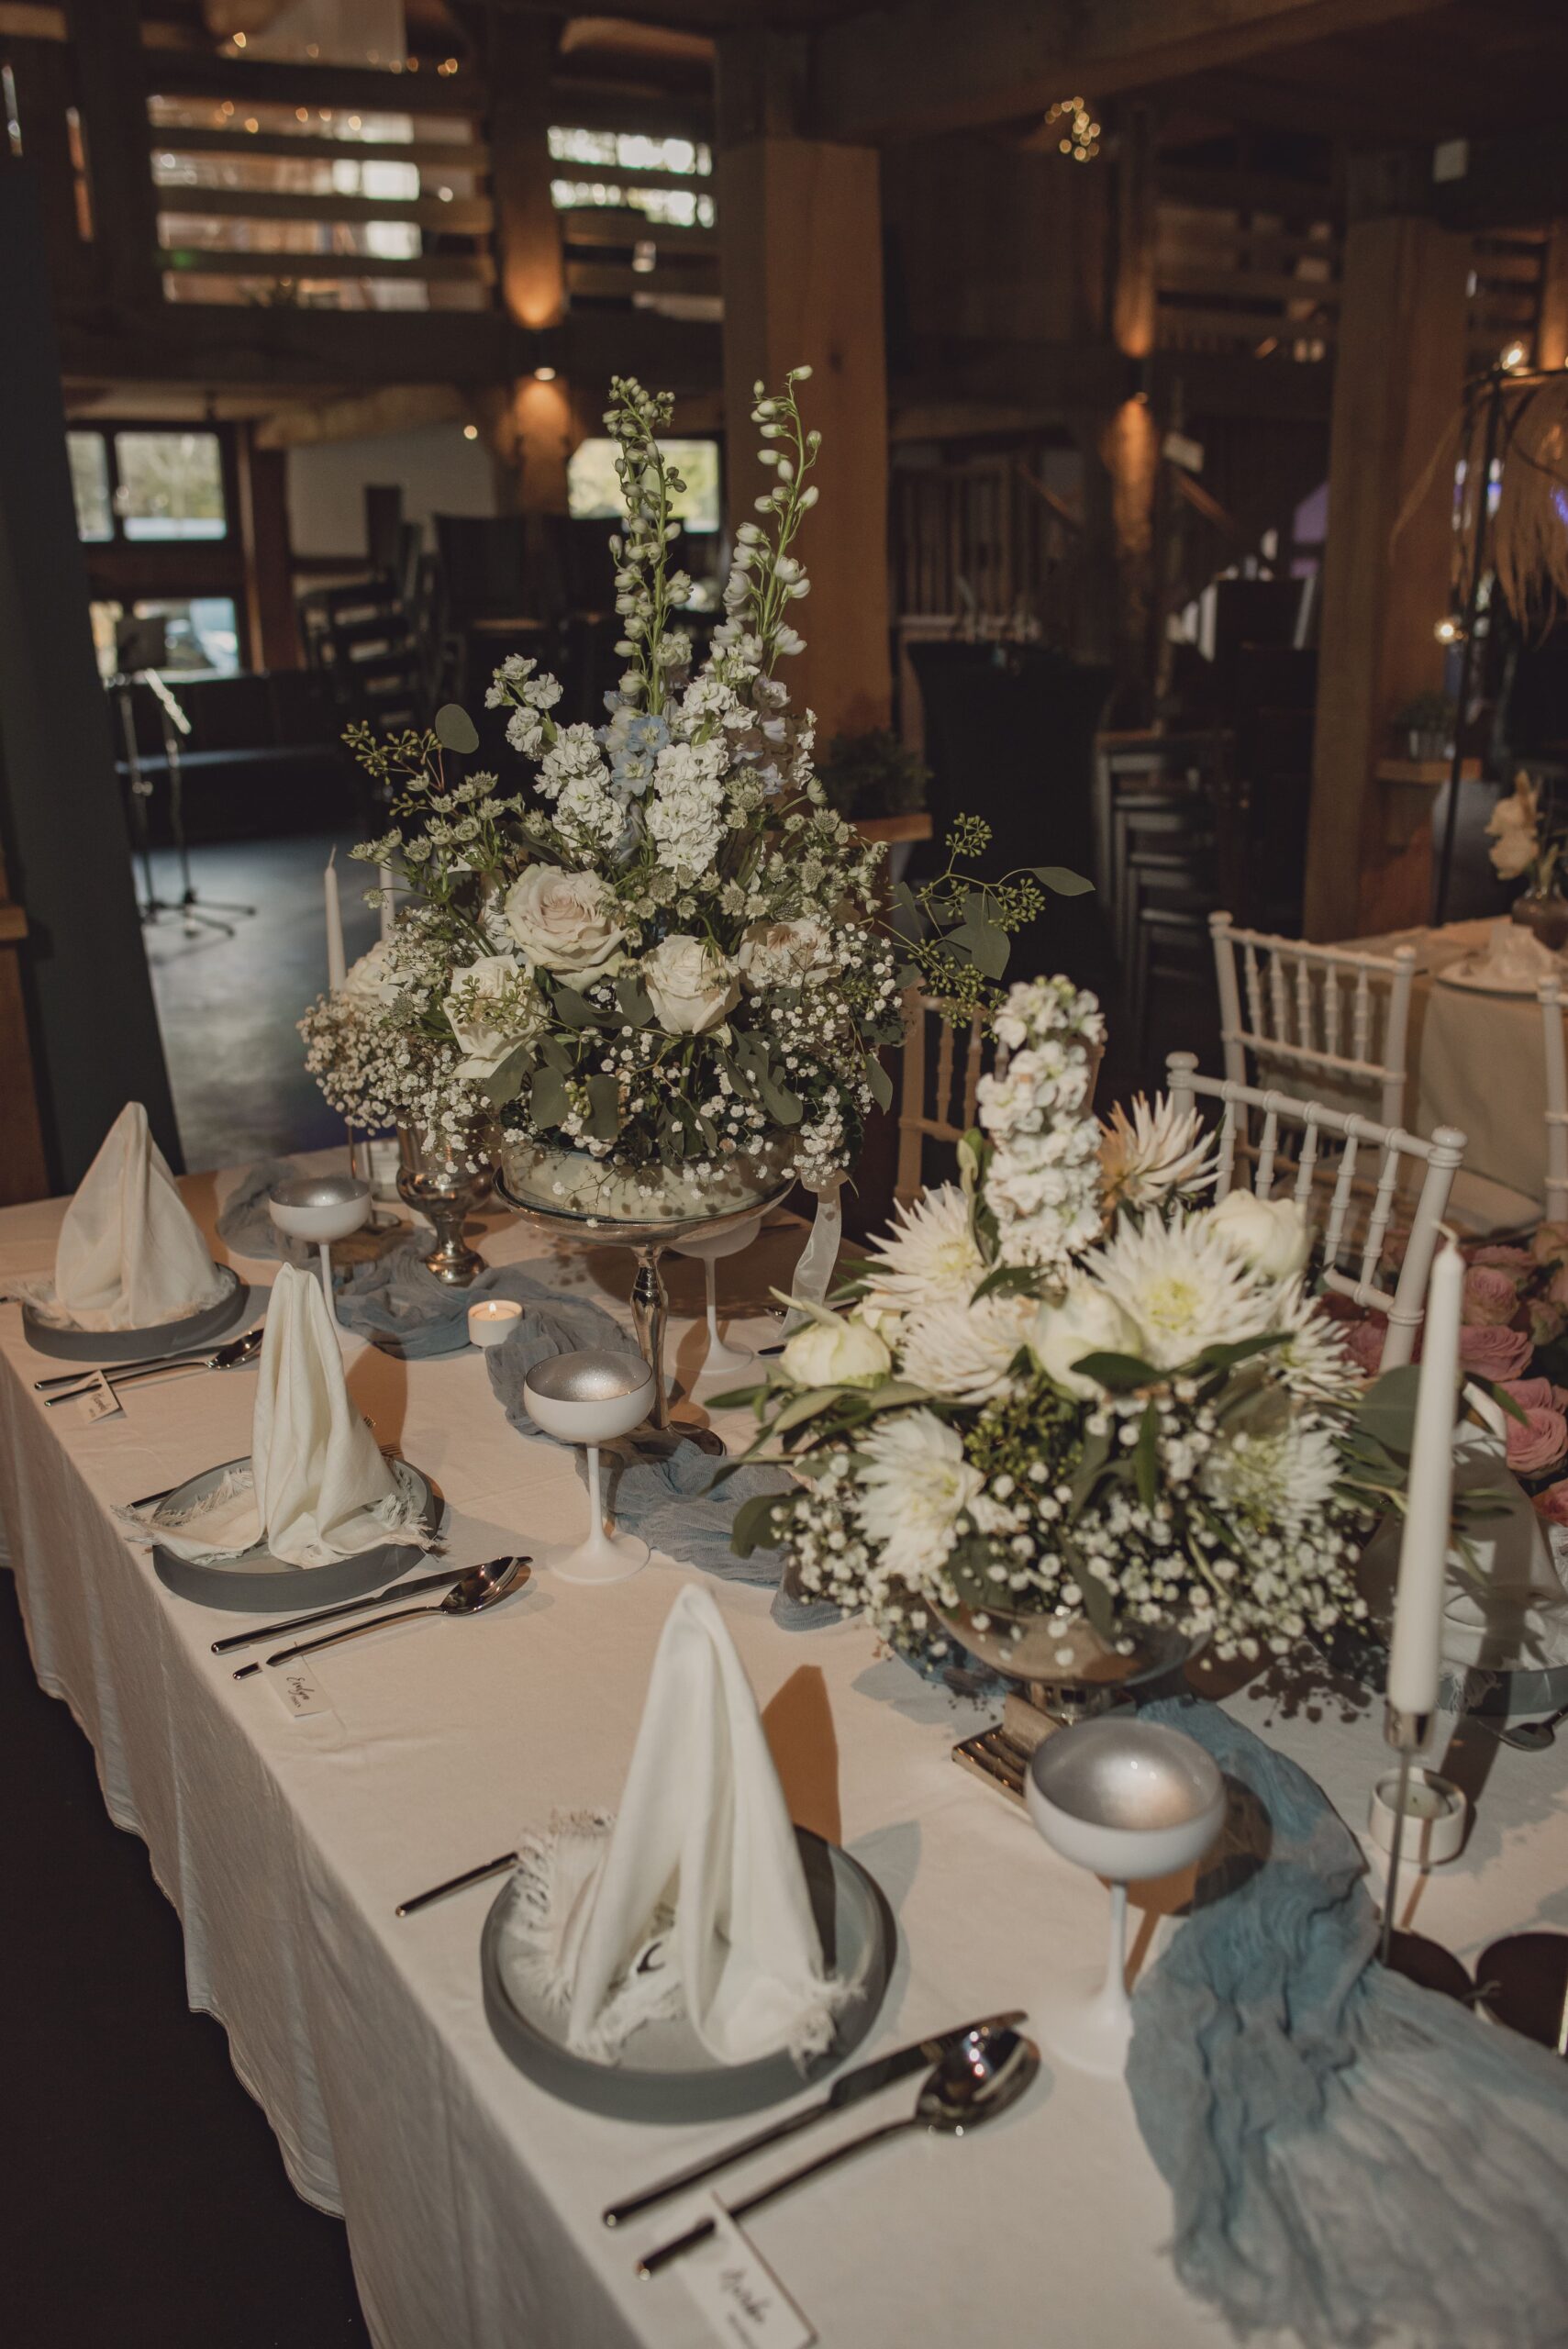 Pompöse Blumensträuße in Weiß mit Silberakzenten auf gedecktem Tisch